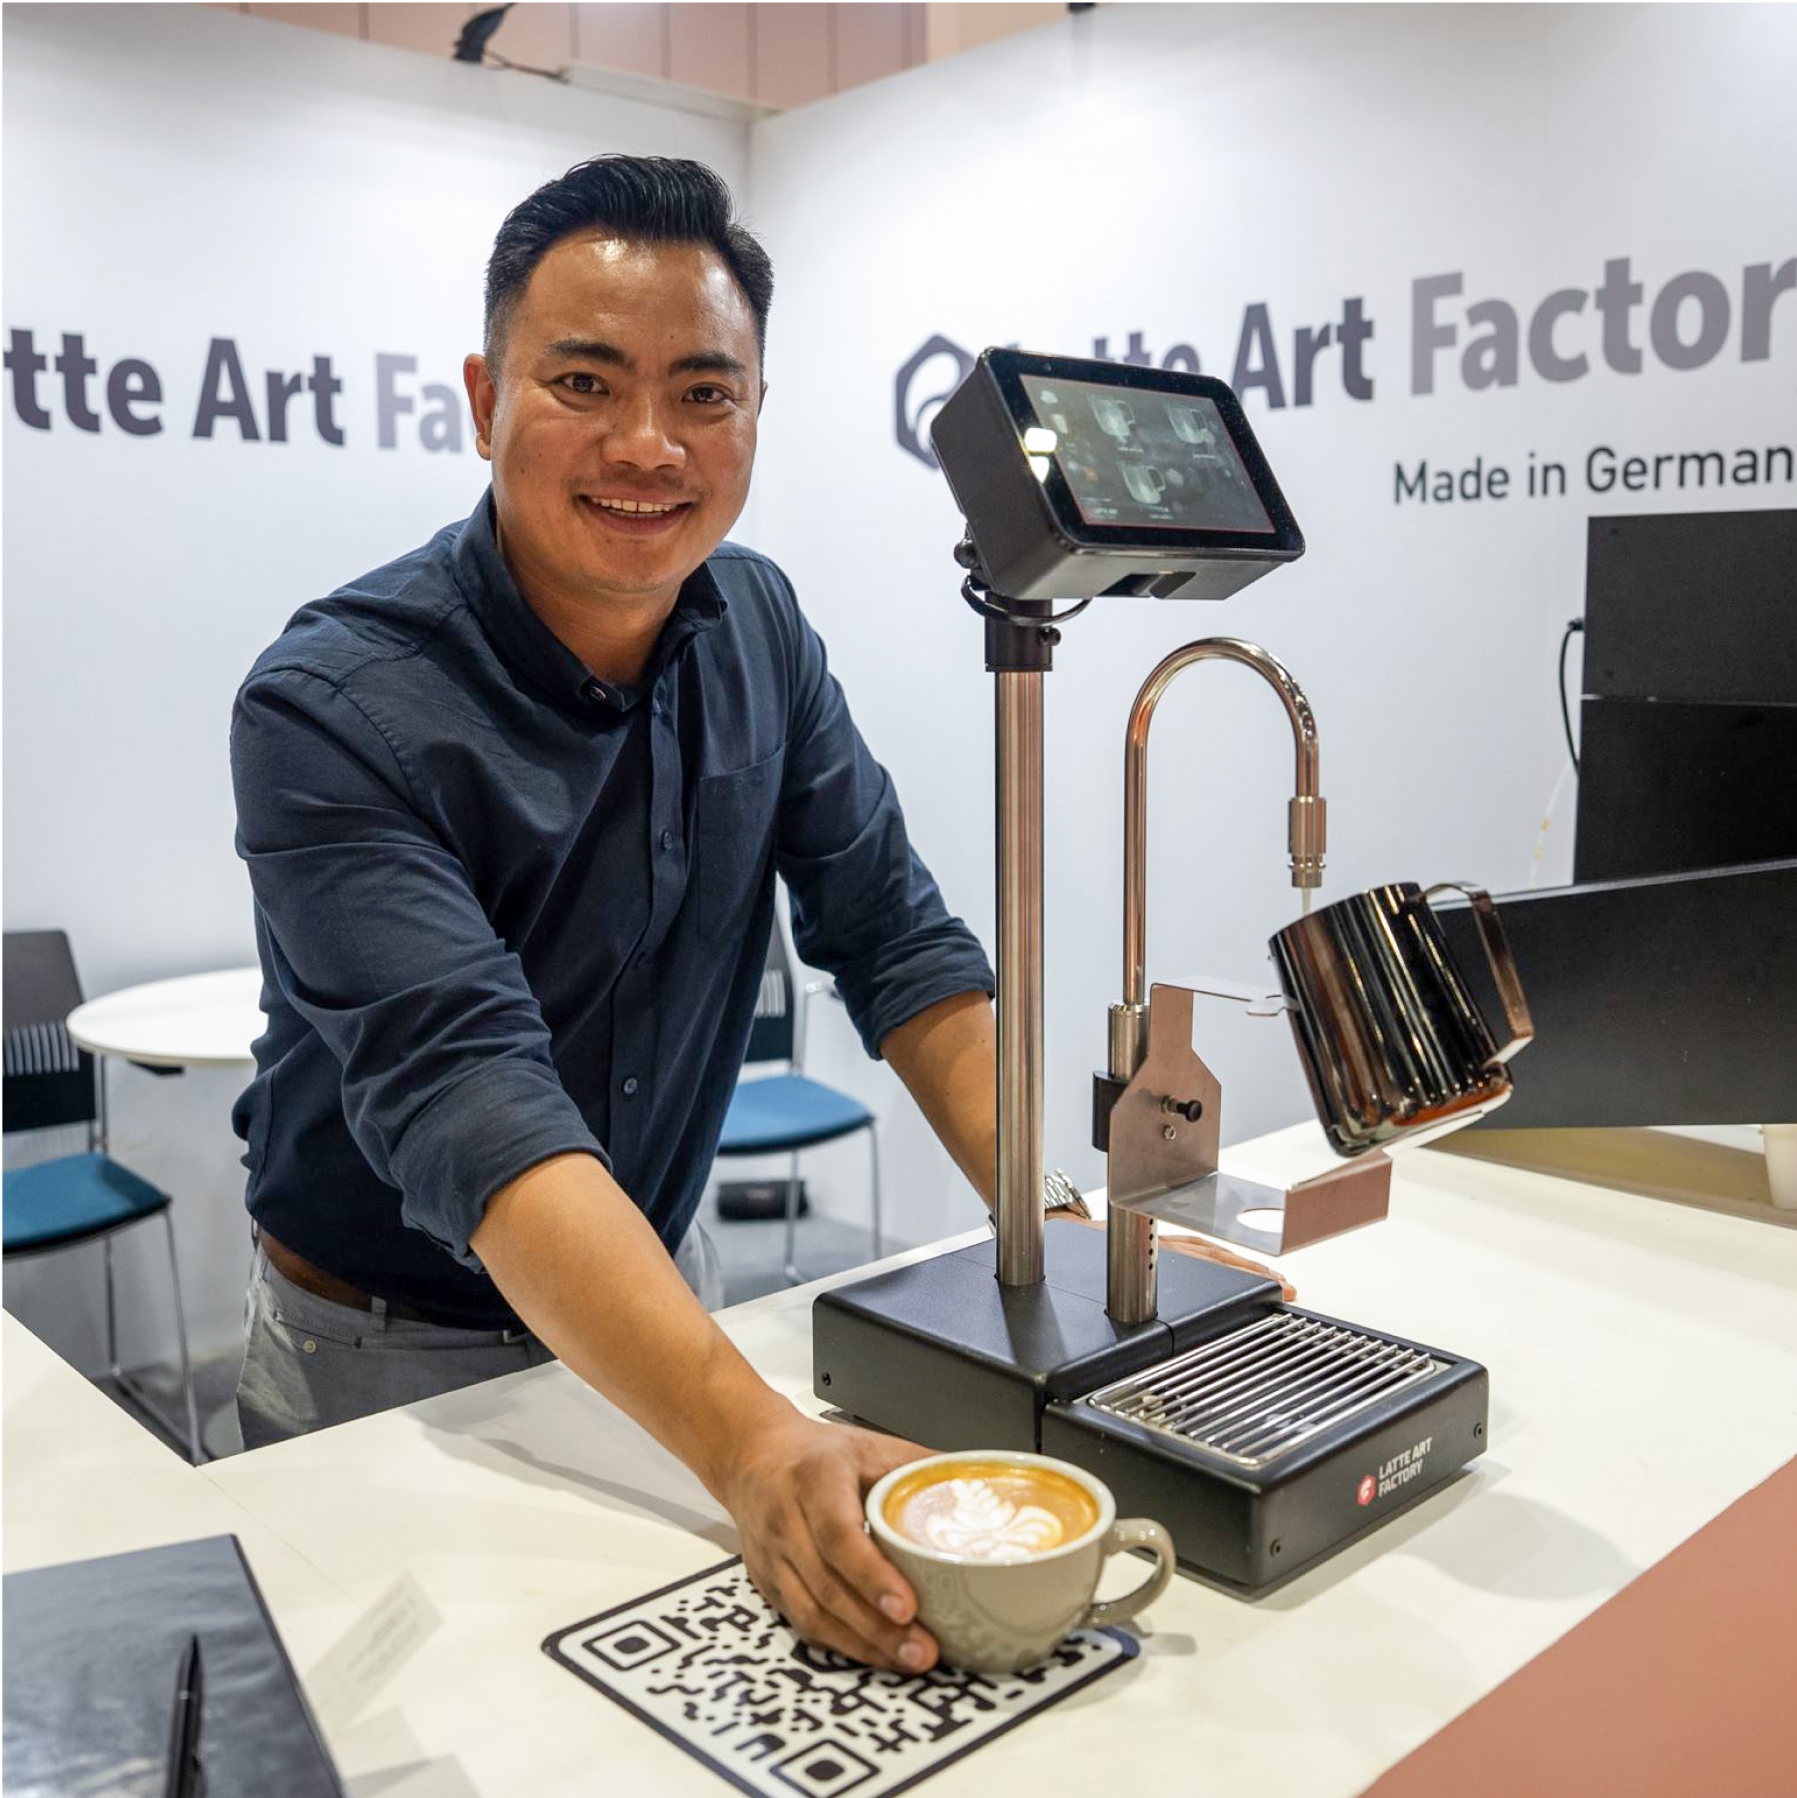 Dhan Tamang Latte Art factory brand ambassador